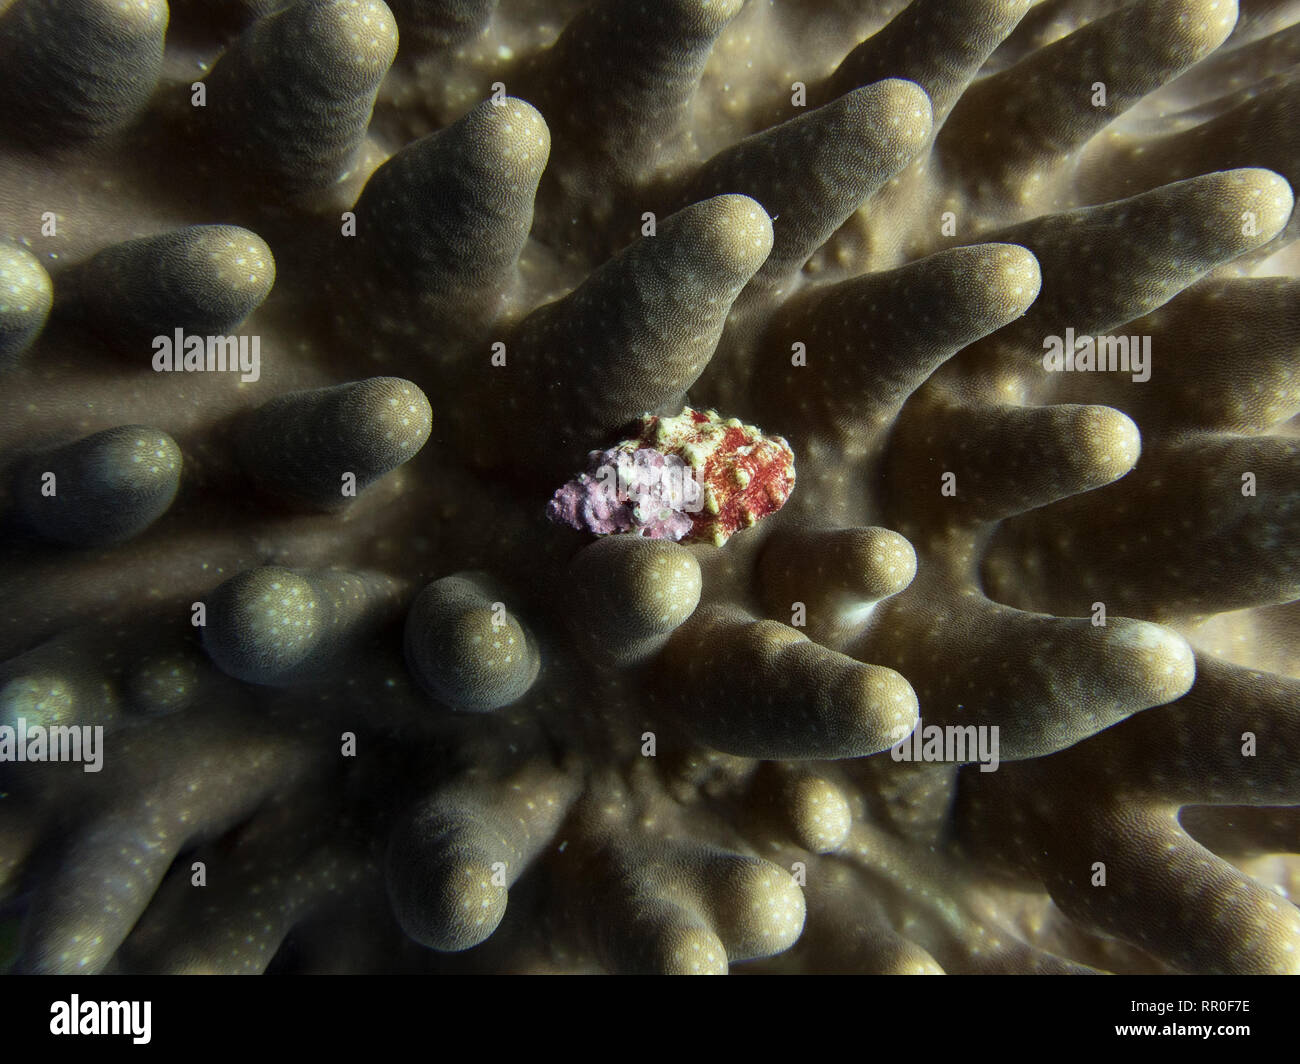 Close up detail de vieille croûte seashell blotti dans les bras de coraux durs. Textures et formes plein cadre. Prises sous l'eau dans les Palaos. Banque D'Images